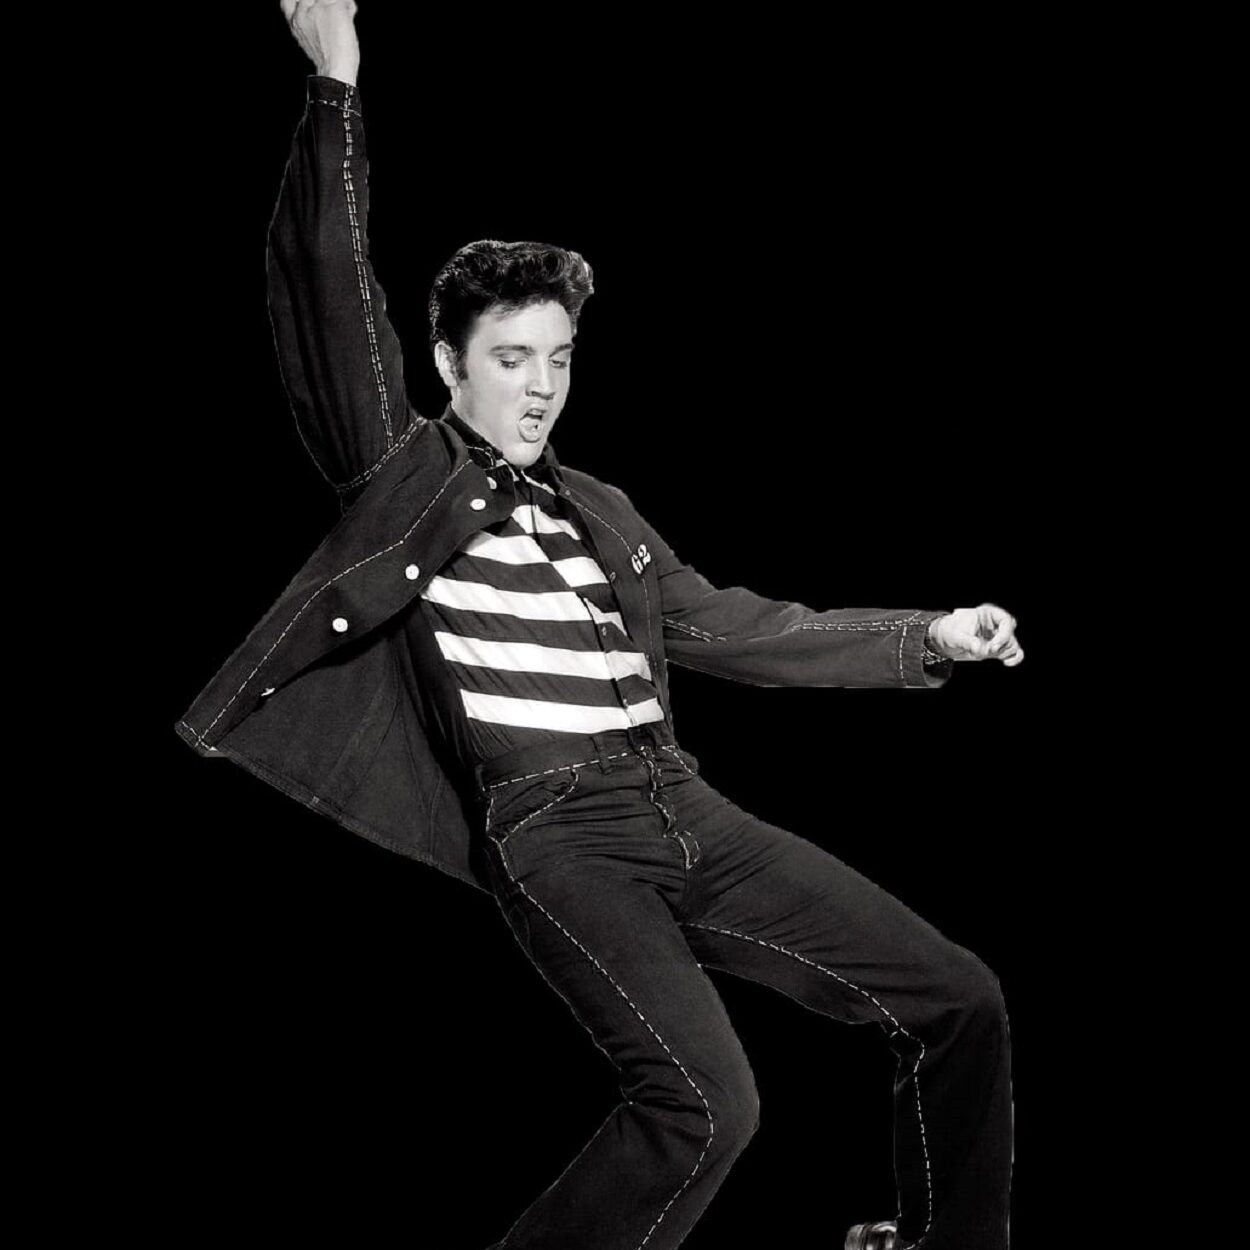 Presley's style